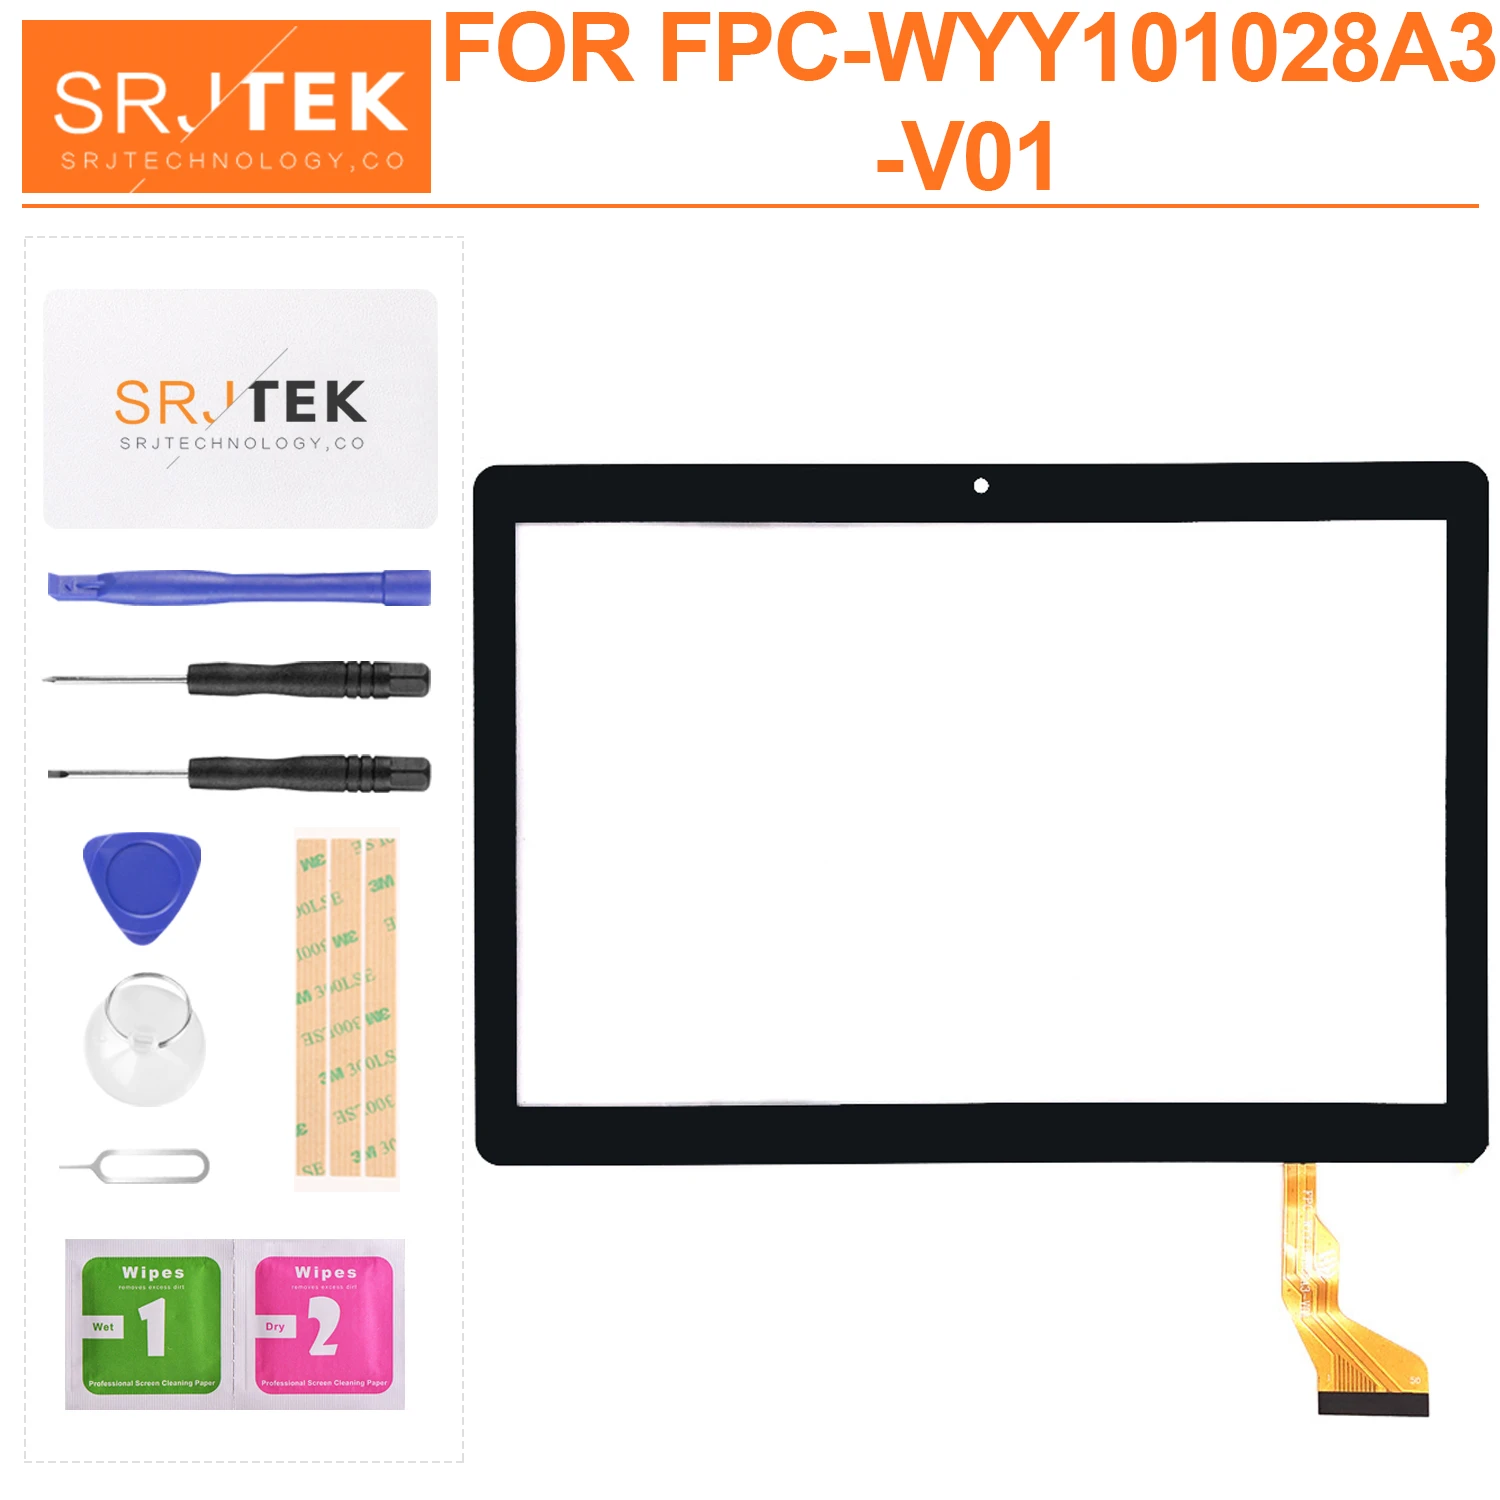 

Дисплей для FPC-WYY101028A3-V01 планшетный ПК емкостный сенсорный экран Экран внешний Панель дигитайзер в сборе запасные Стекло Сенсор Экран